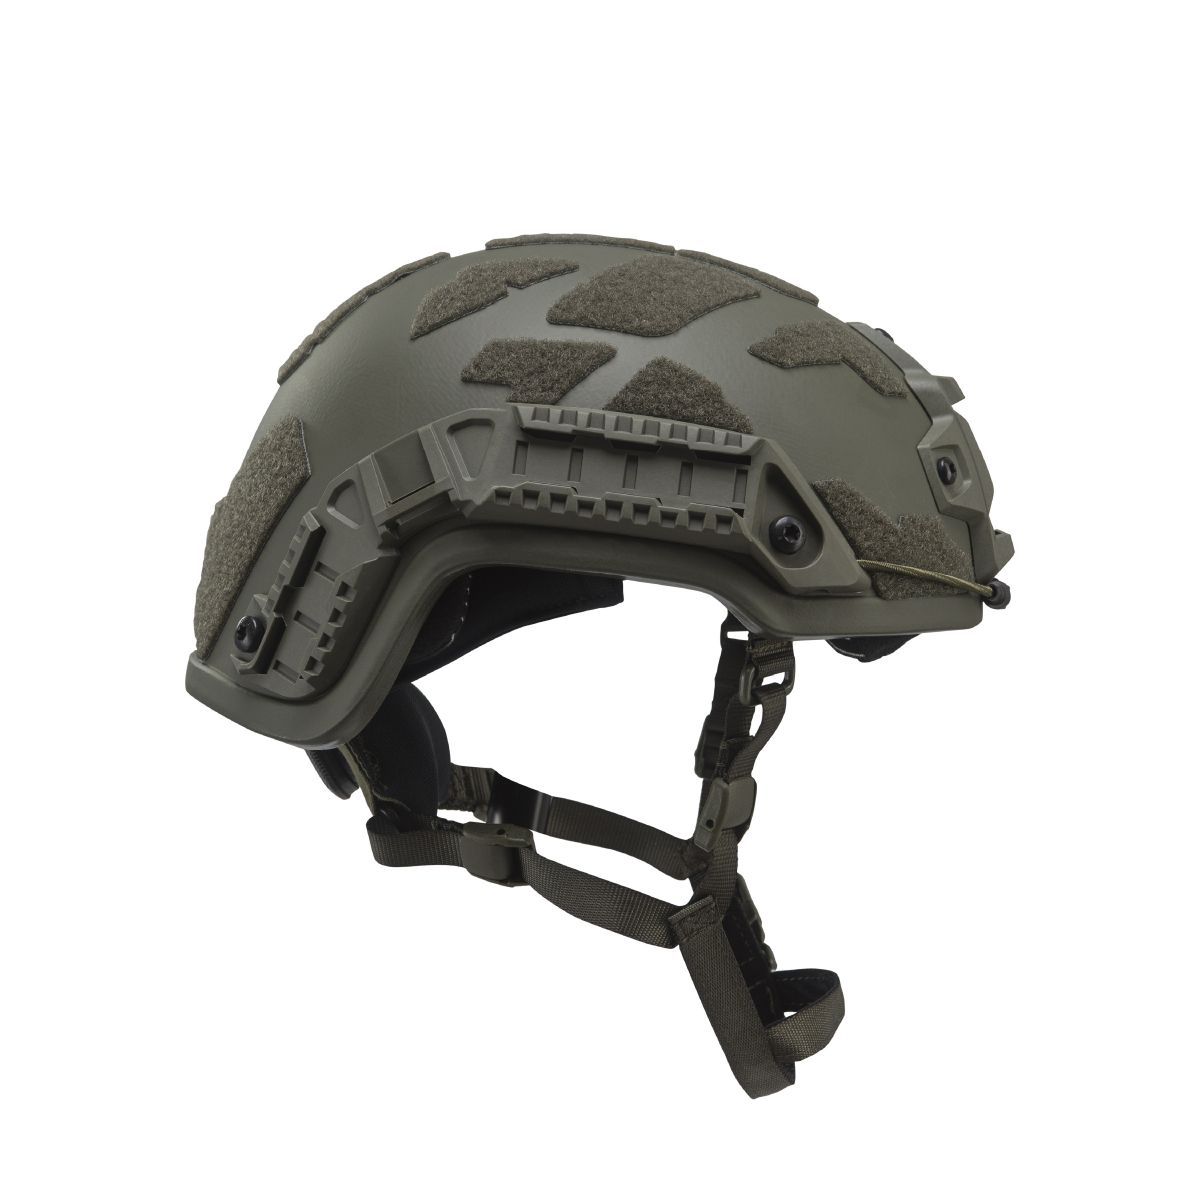 Кевларовый шлем ARCH Helmet L (ECH) с вырезом под активные наушники. Олива 9